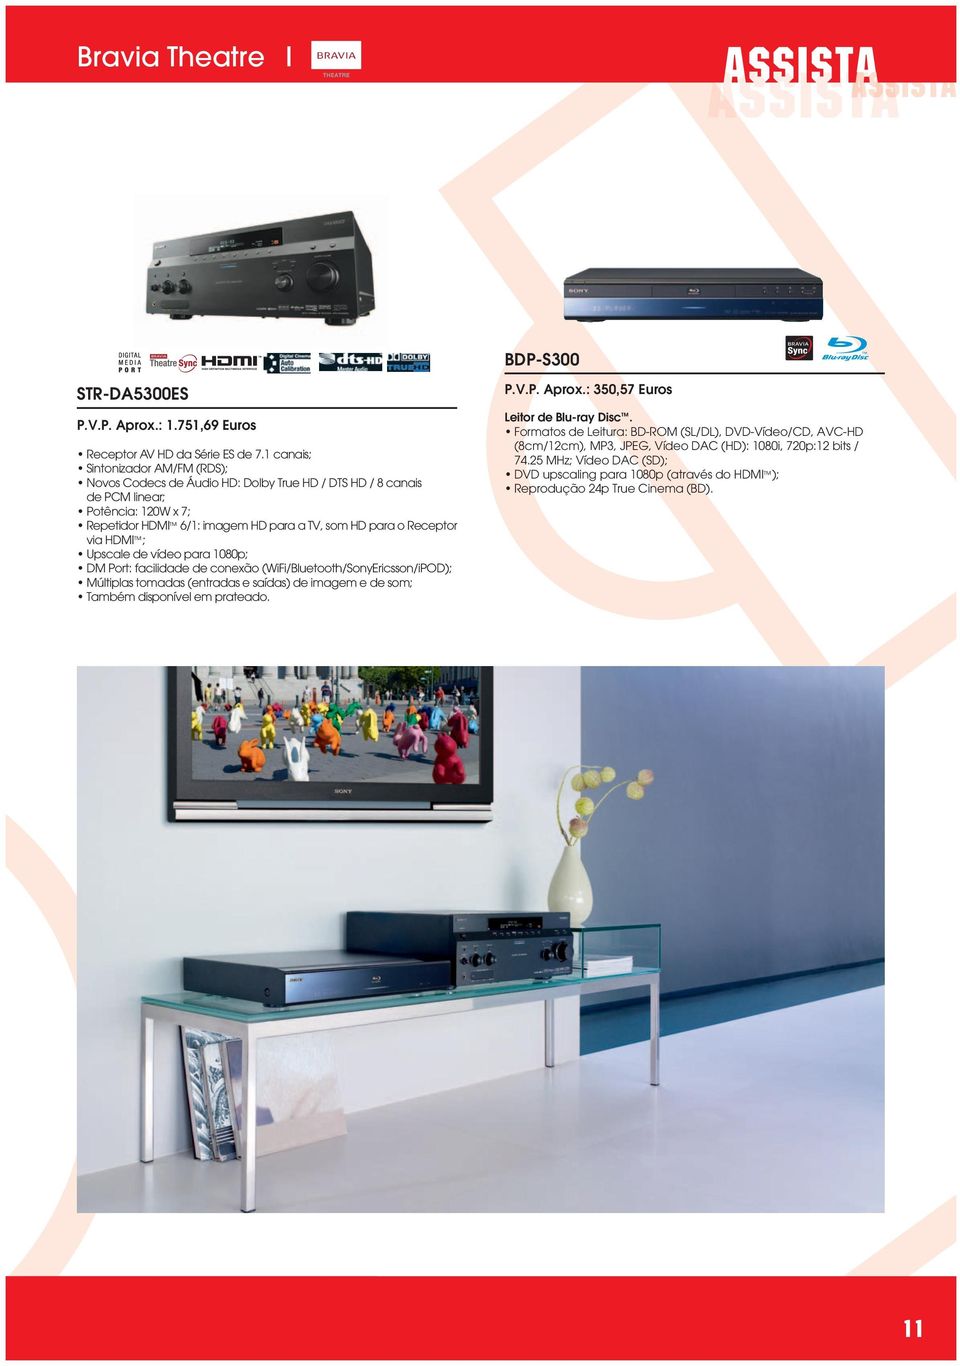 Receptor via HDMI ; Upscale de vídeo para 1080p; DM Port: facilidade de conexão (WiFi/Bluetooth/SonyEricsson/iPOD); Múltiplas tomadas (entradas e saídas) de imagem e de som; Também disponível